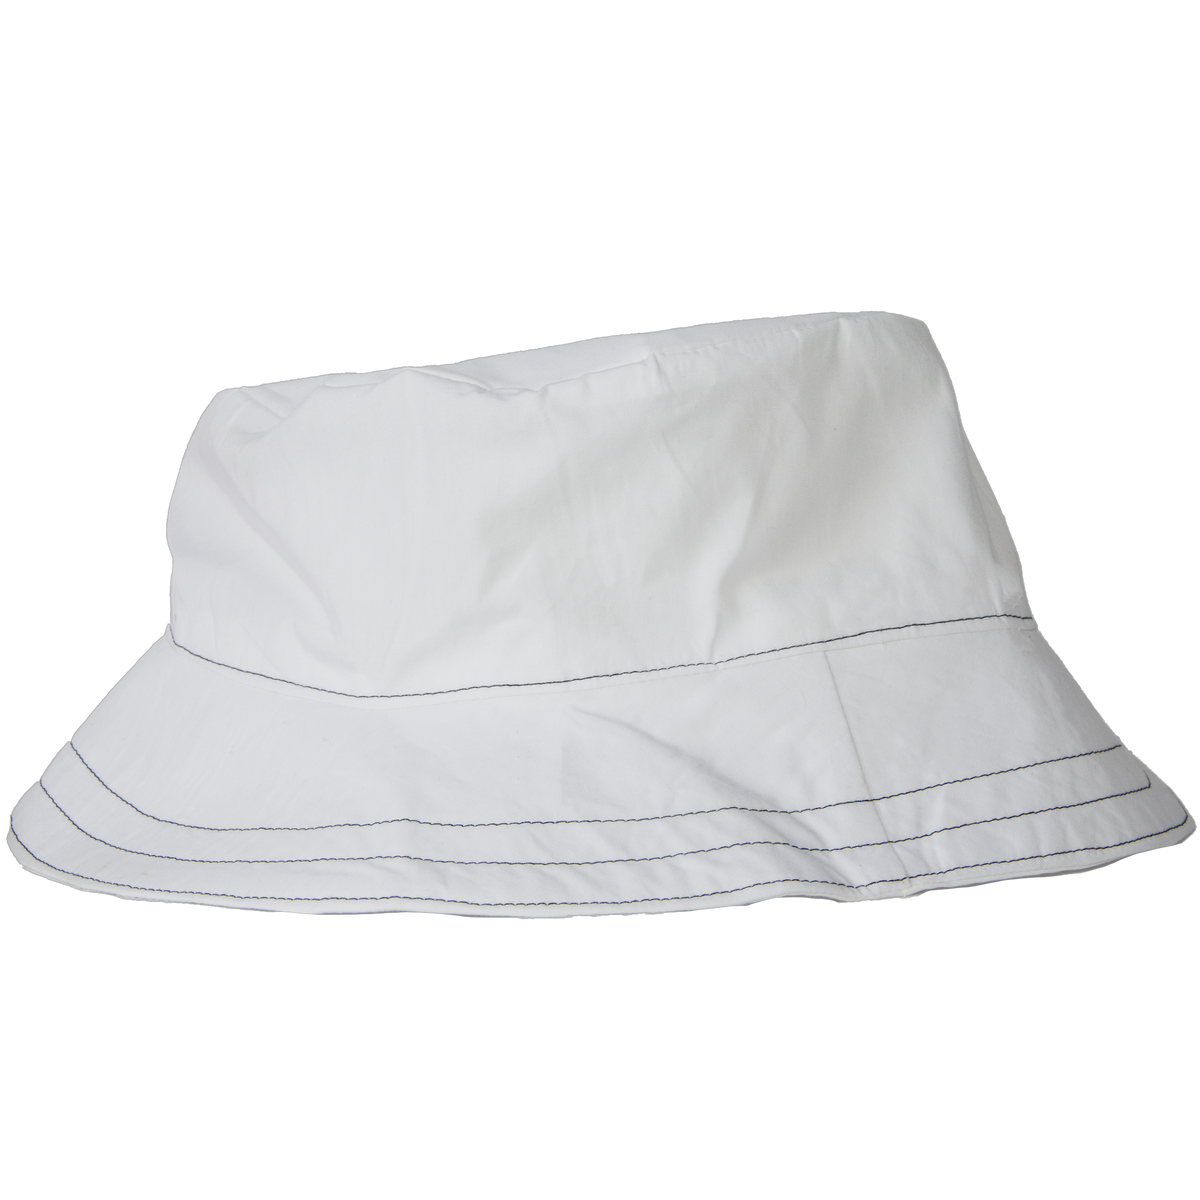 Bucket hat - White